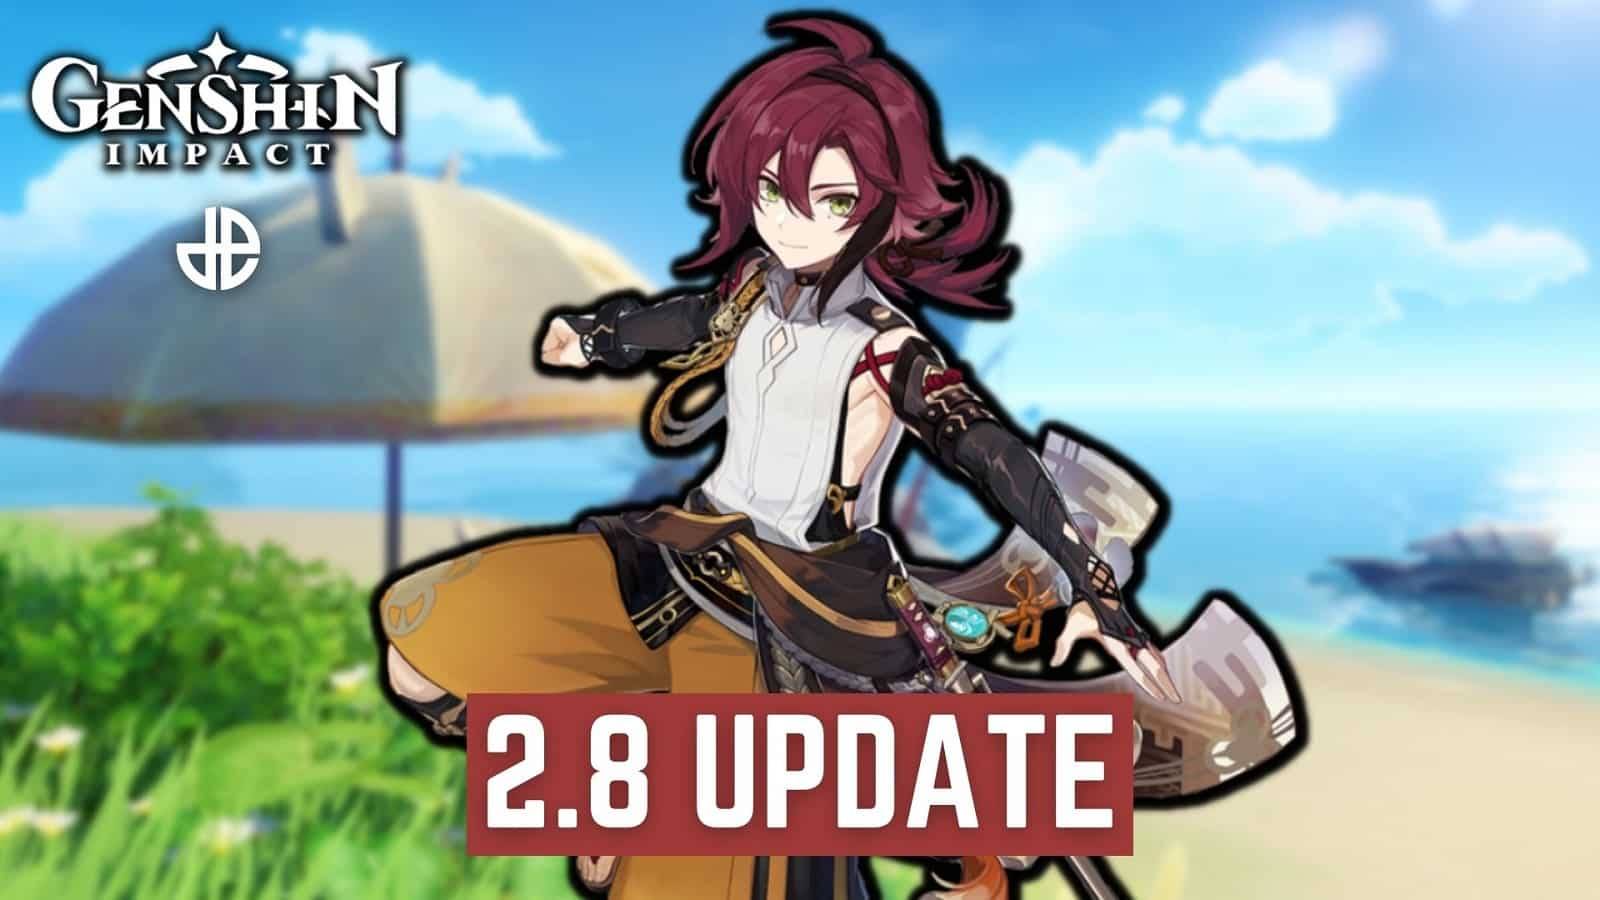 Genshin Impact 2.8 update